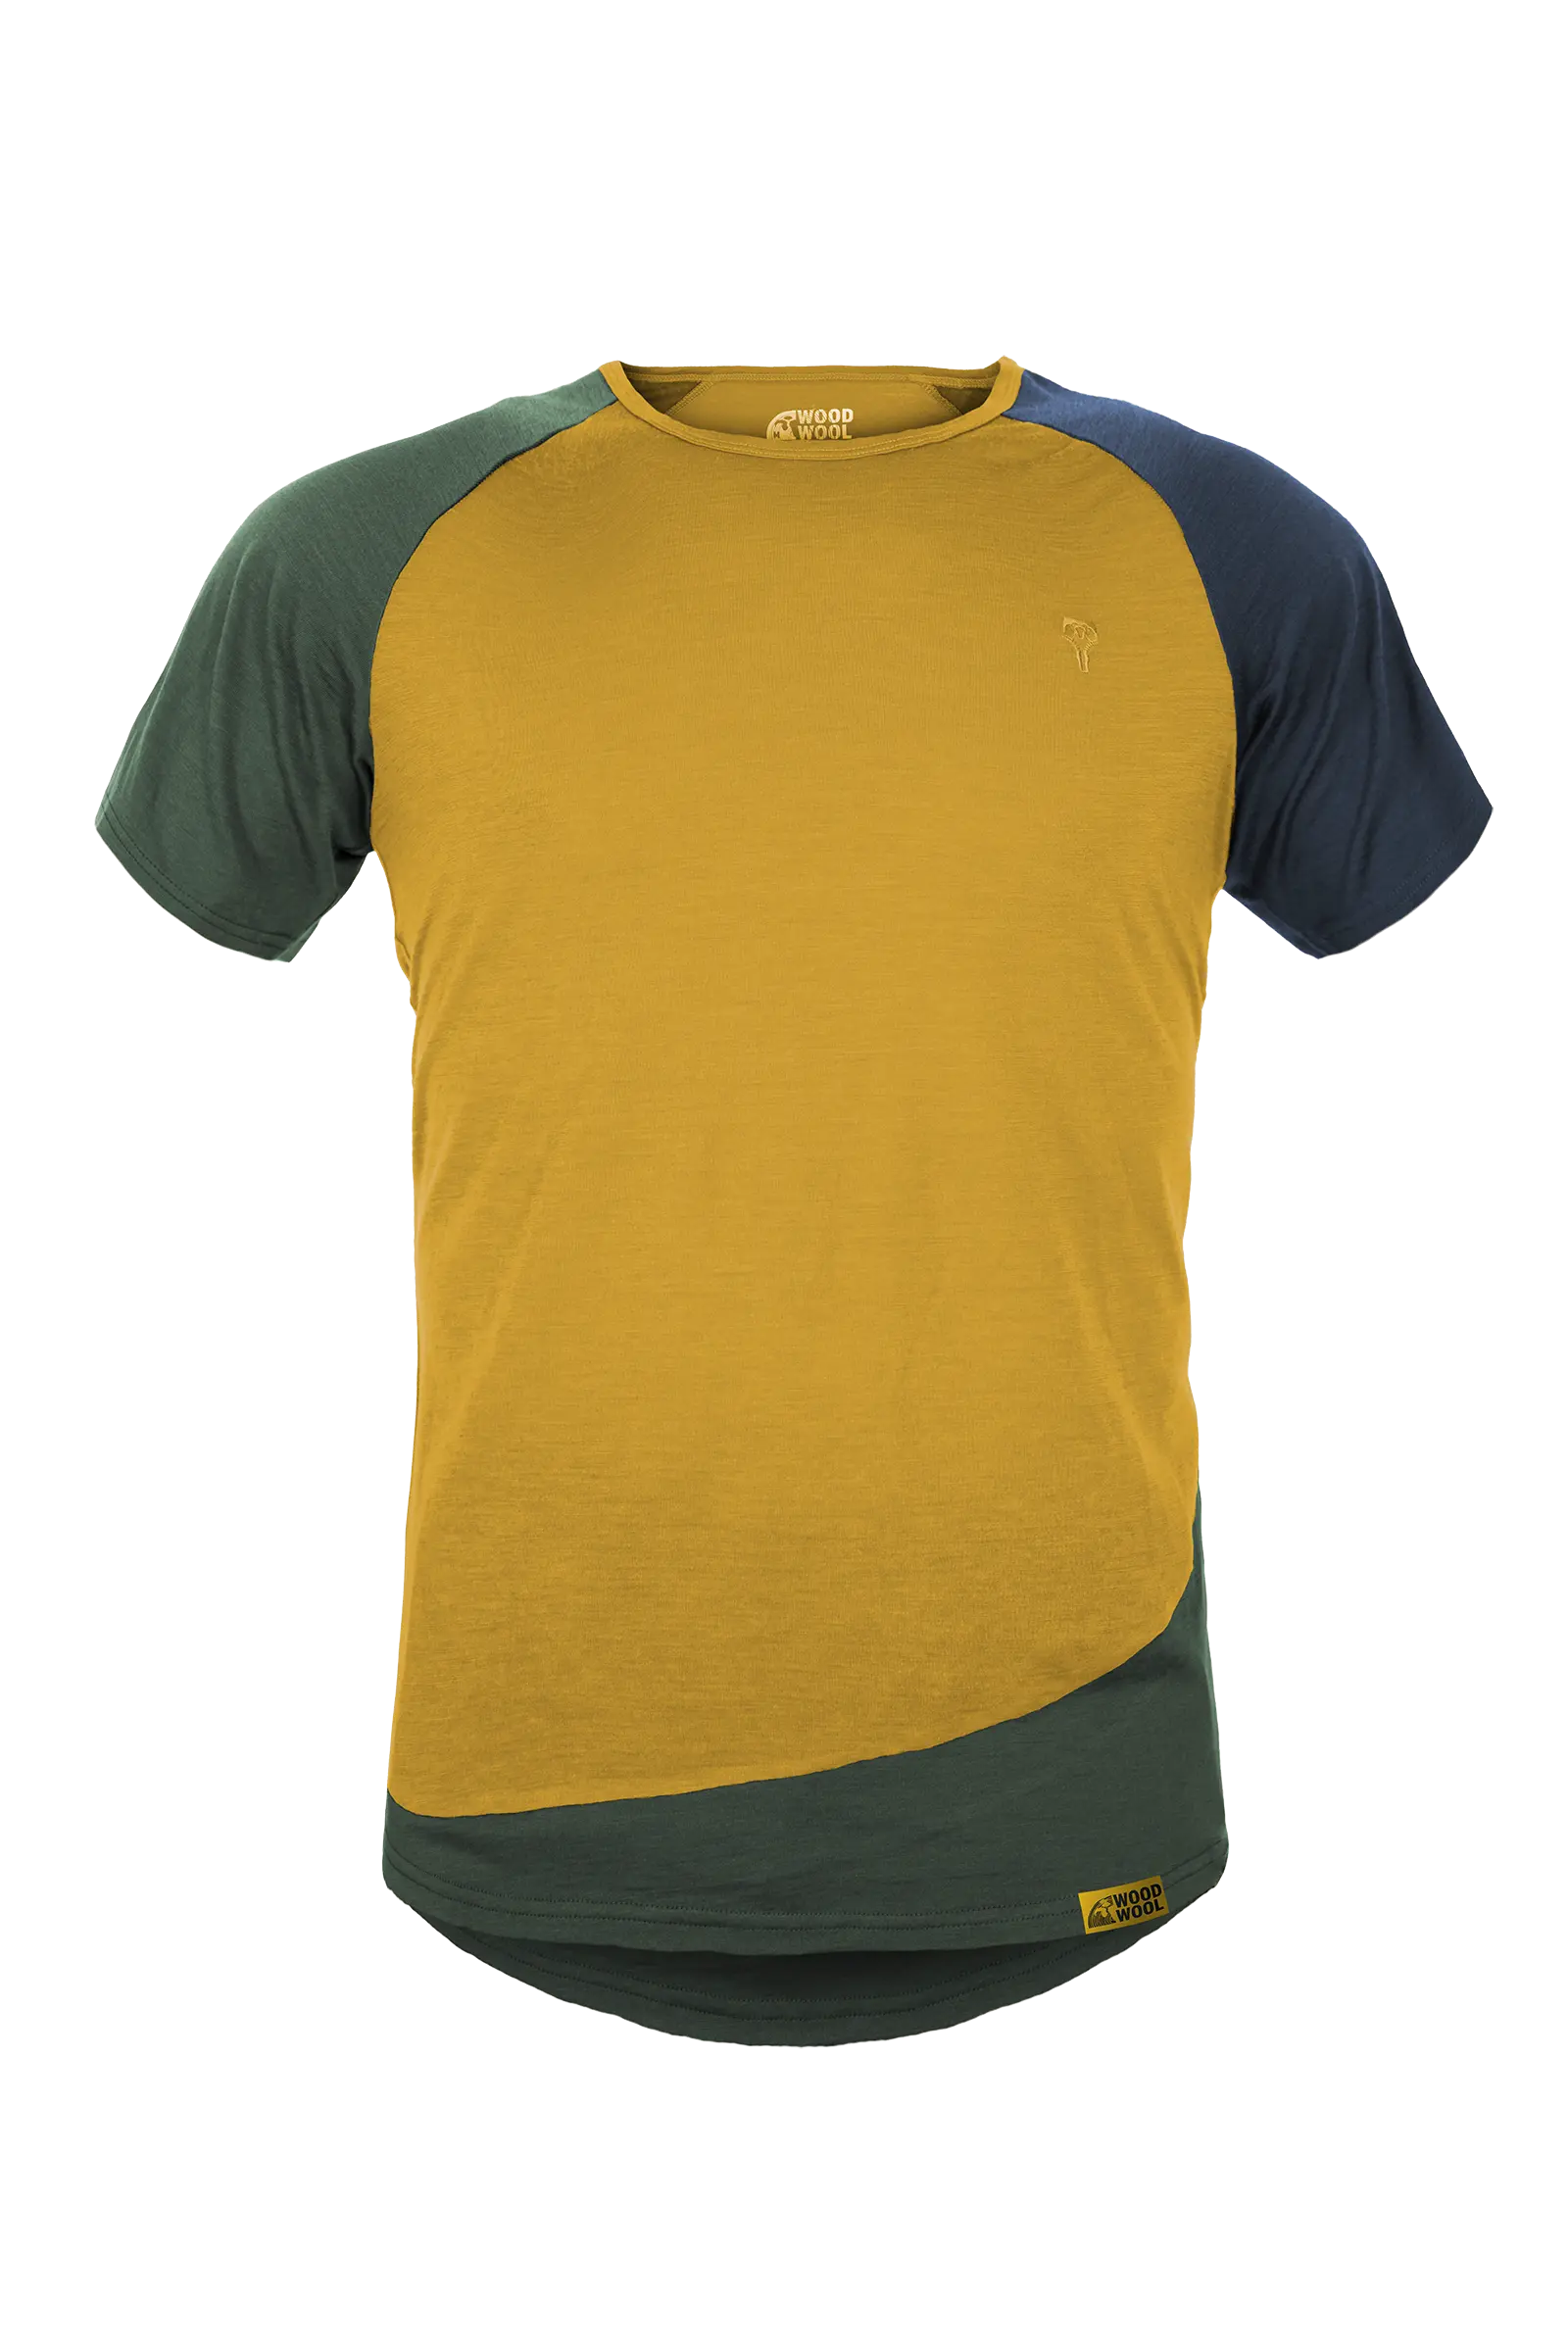 gruezi-bag-woodwool-t-shirt-mr-kirk-2700-2704-daizy-daze-yellow-amainfrei Kopie